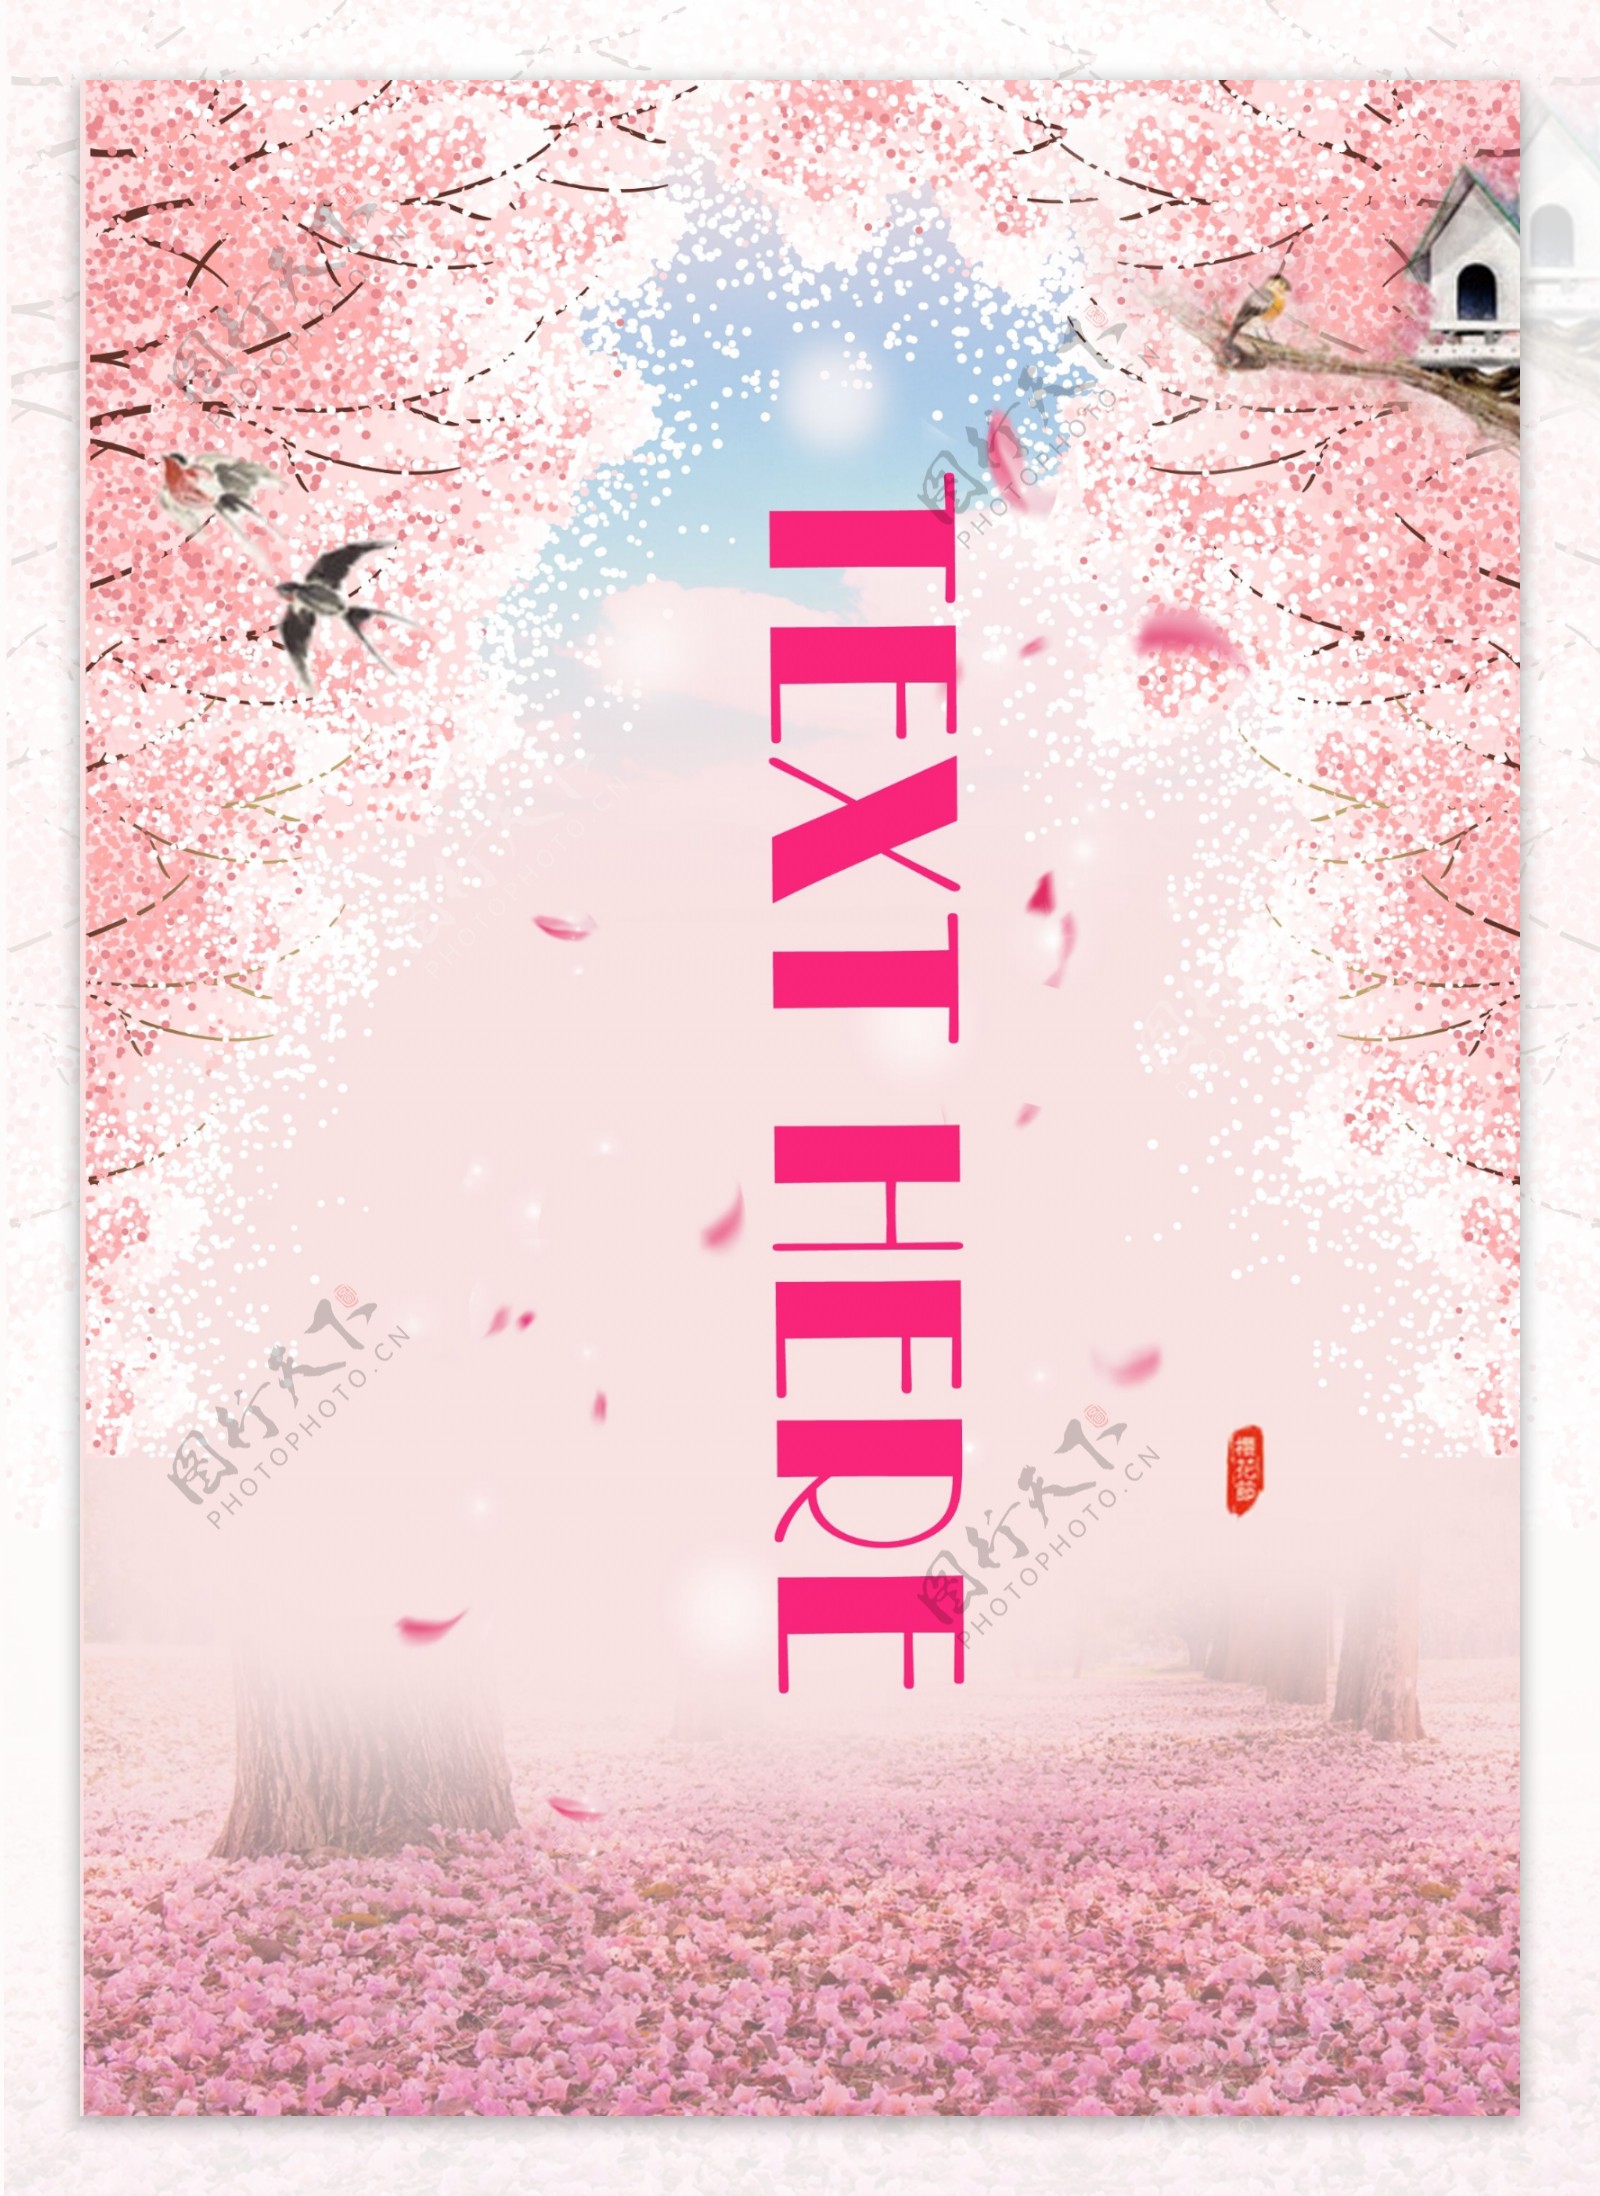 樱花飘落漫天春季粉红少女装系列背景